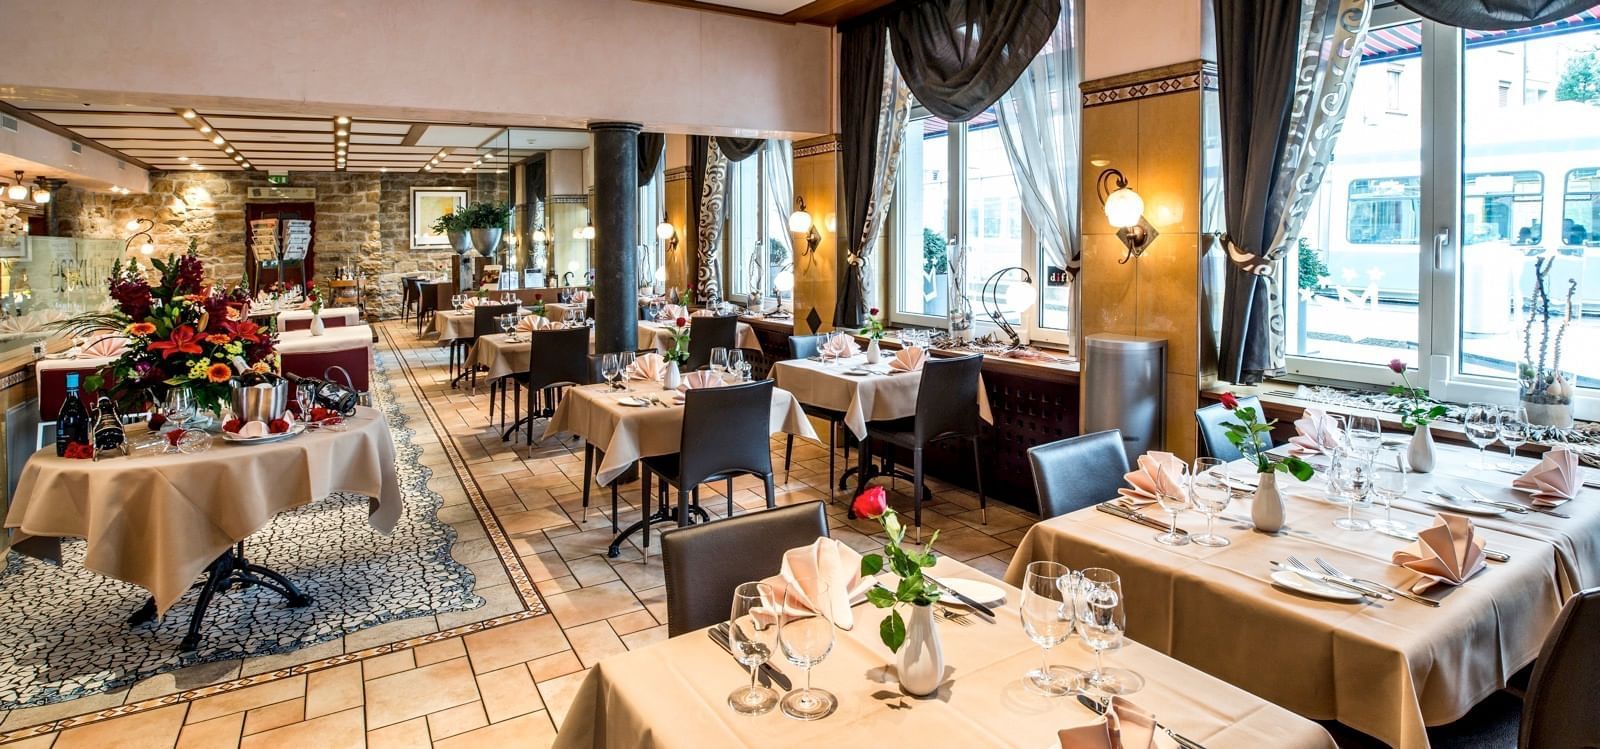 Restaurant at Hotel Krone Unterstrass in Zurich